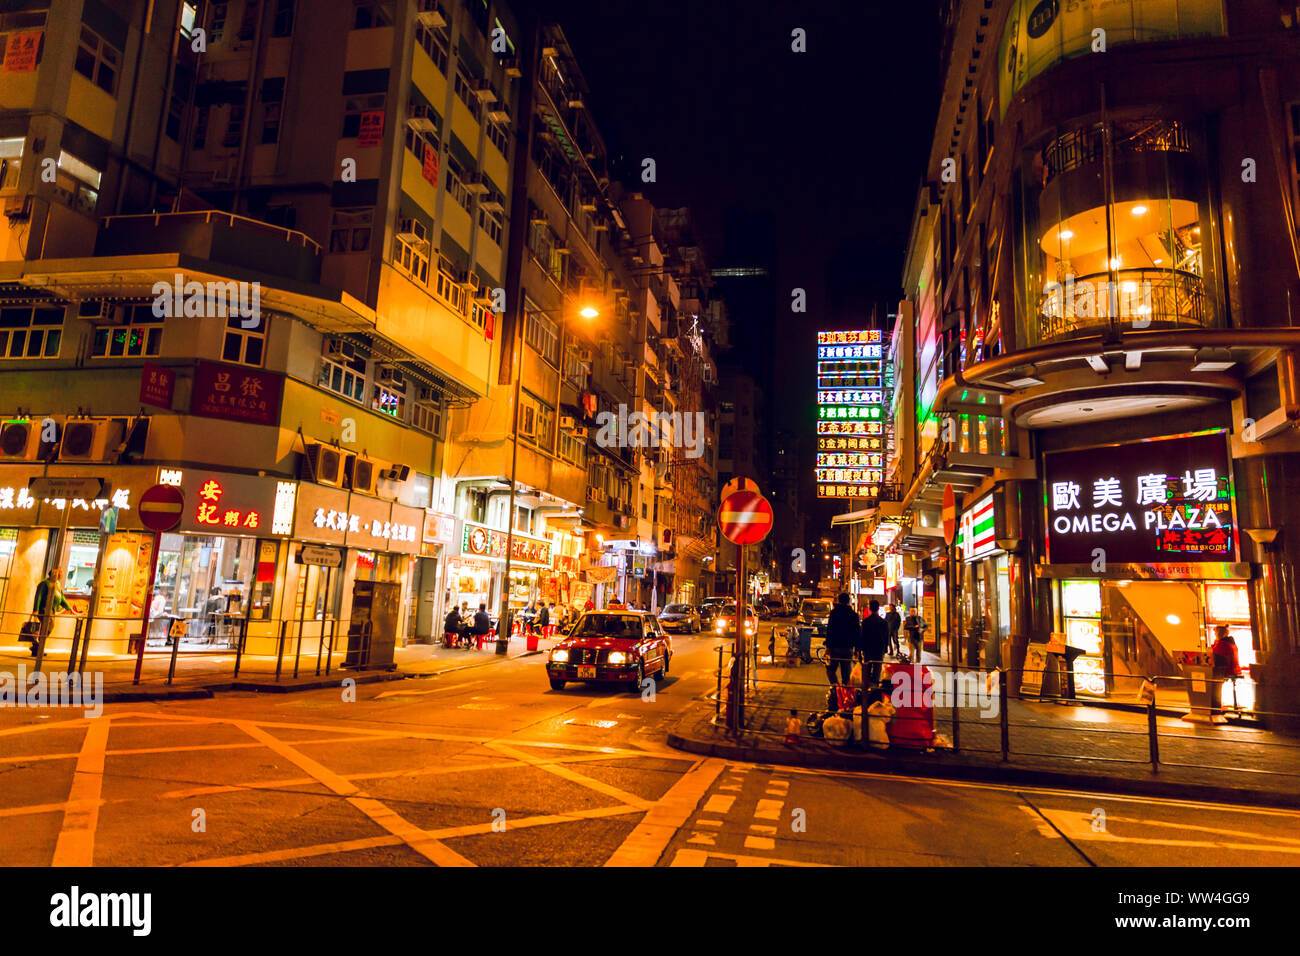 Hong Kong night street Road reisen Sehenswürdigkeiten in Mongkok ablenken ruhig keine Touristen und Reisenden. 24. November 2017. Stockfoto